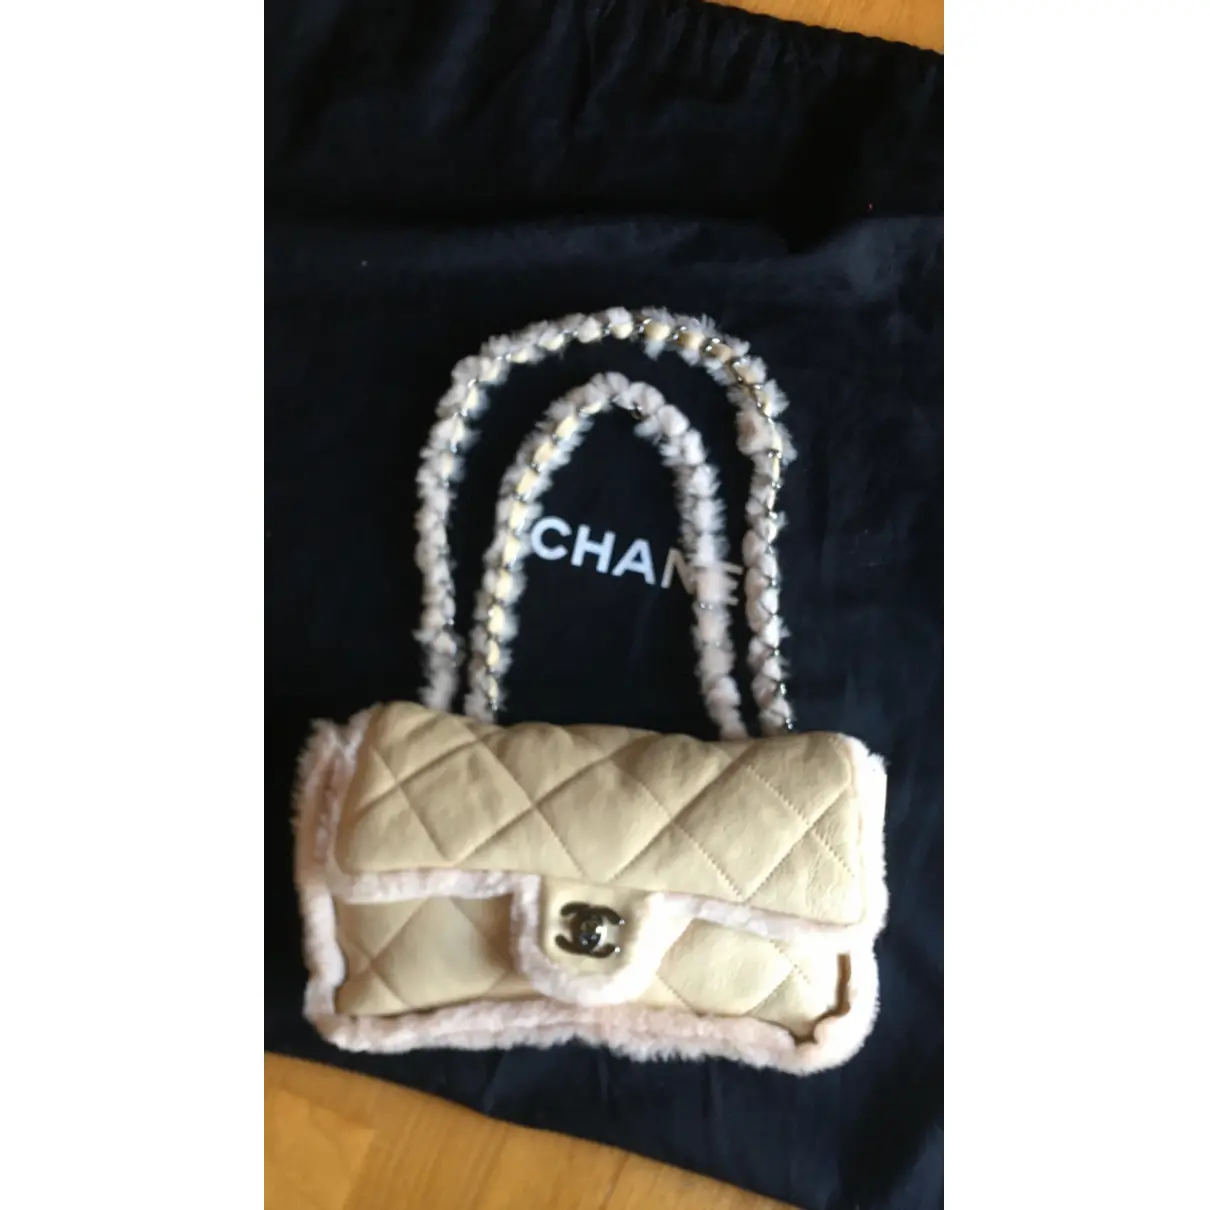 Timeless/Classique handbag Chanel